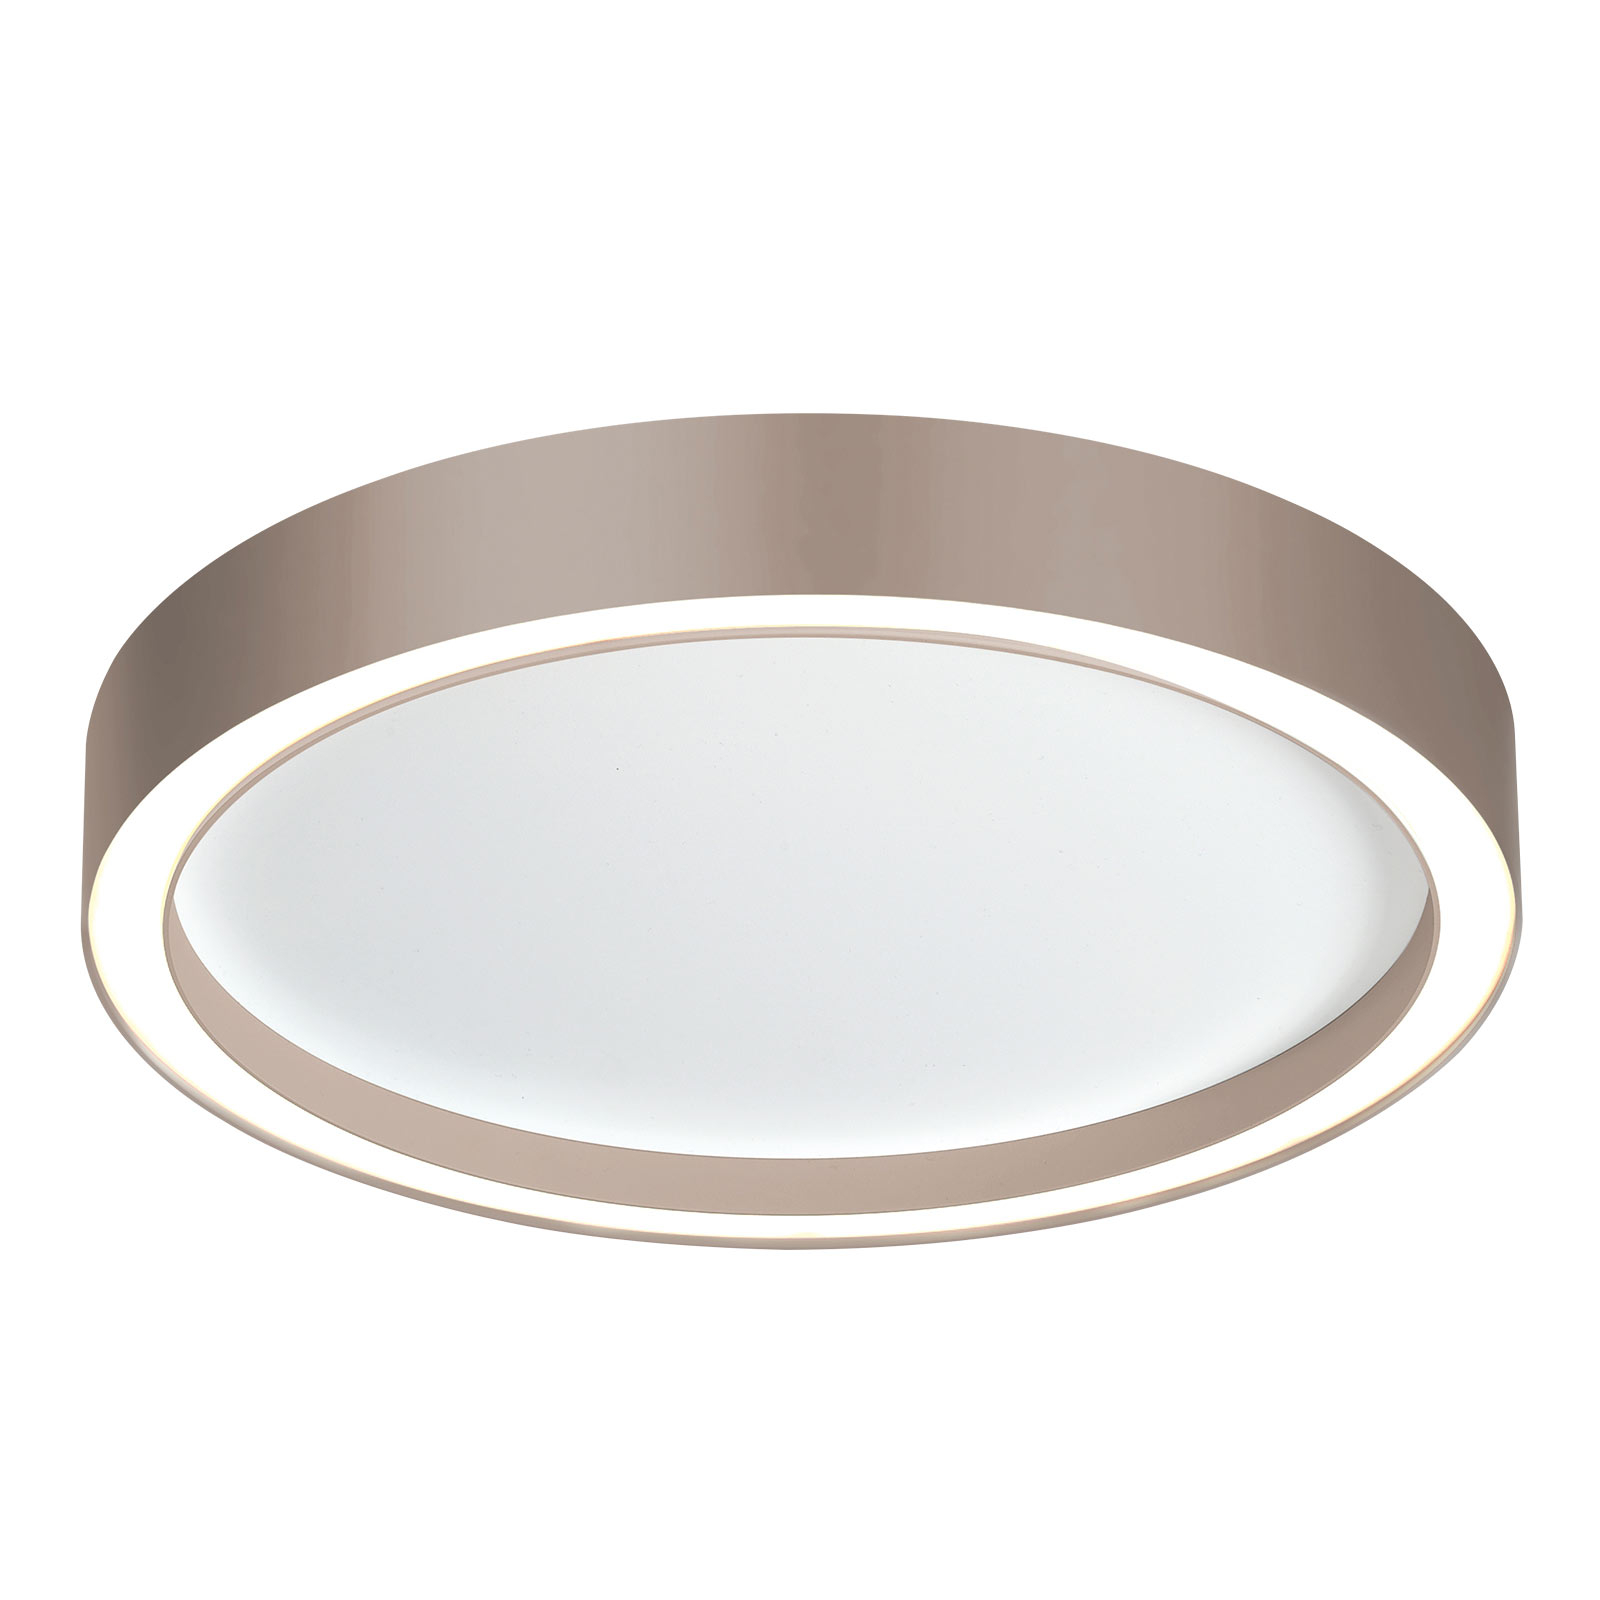 Bopp Aura LED ceiling light Ø 55cm white/taupe